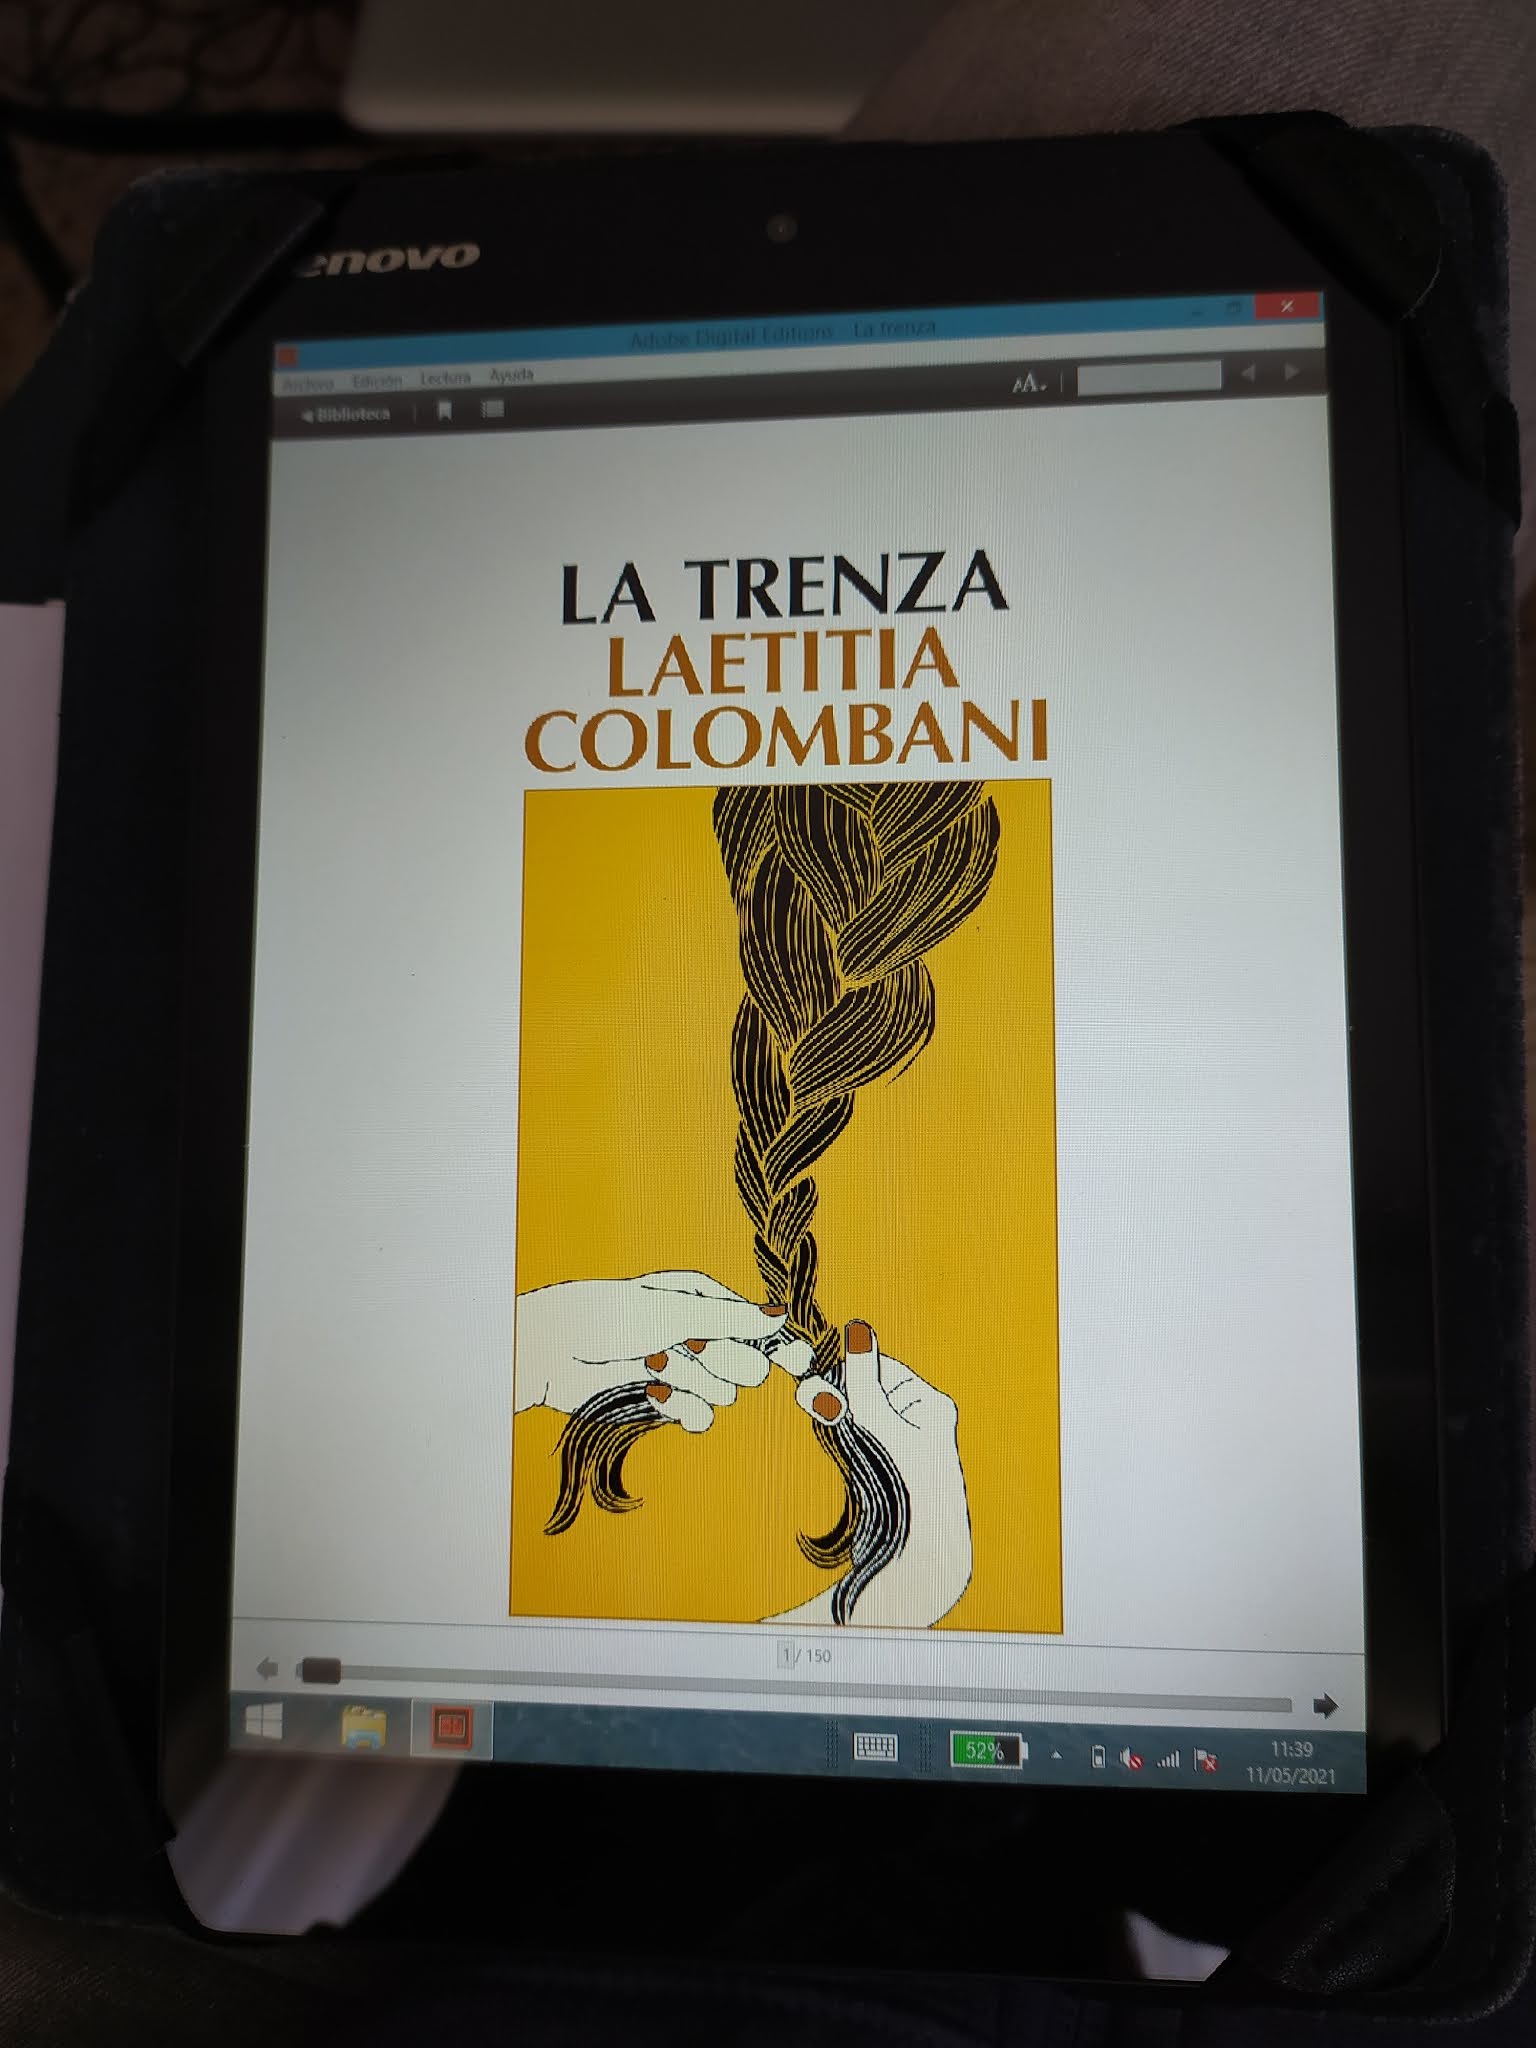 Al calor de los libros: LA TRENZA de Laetitia Colombani